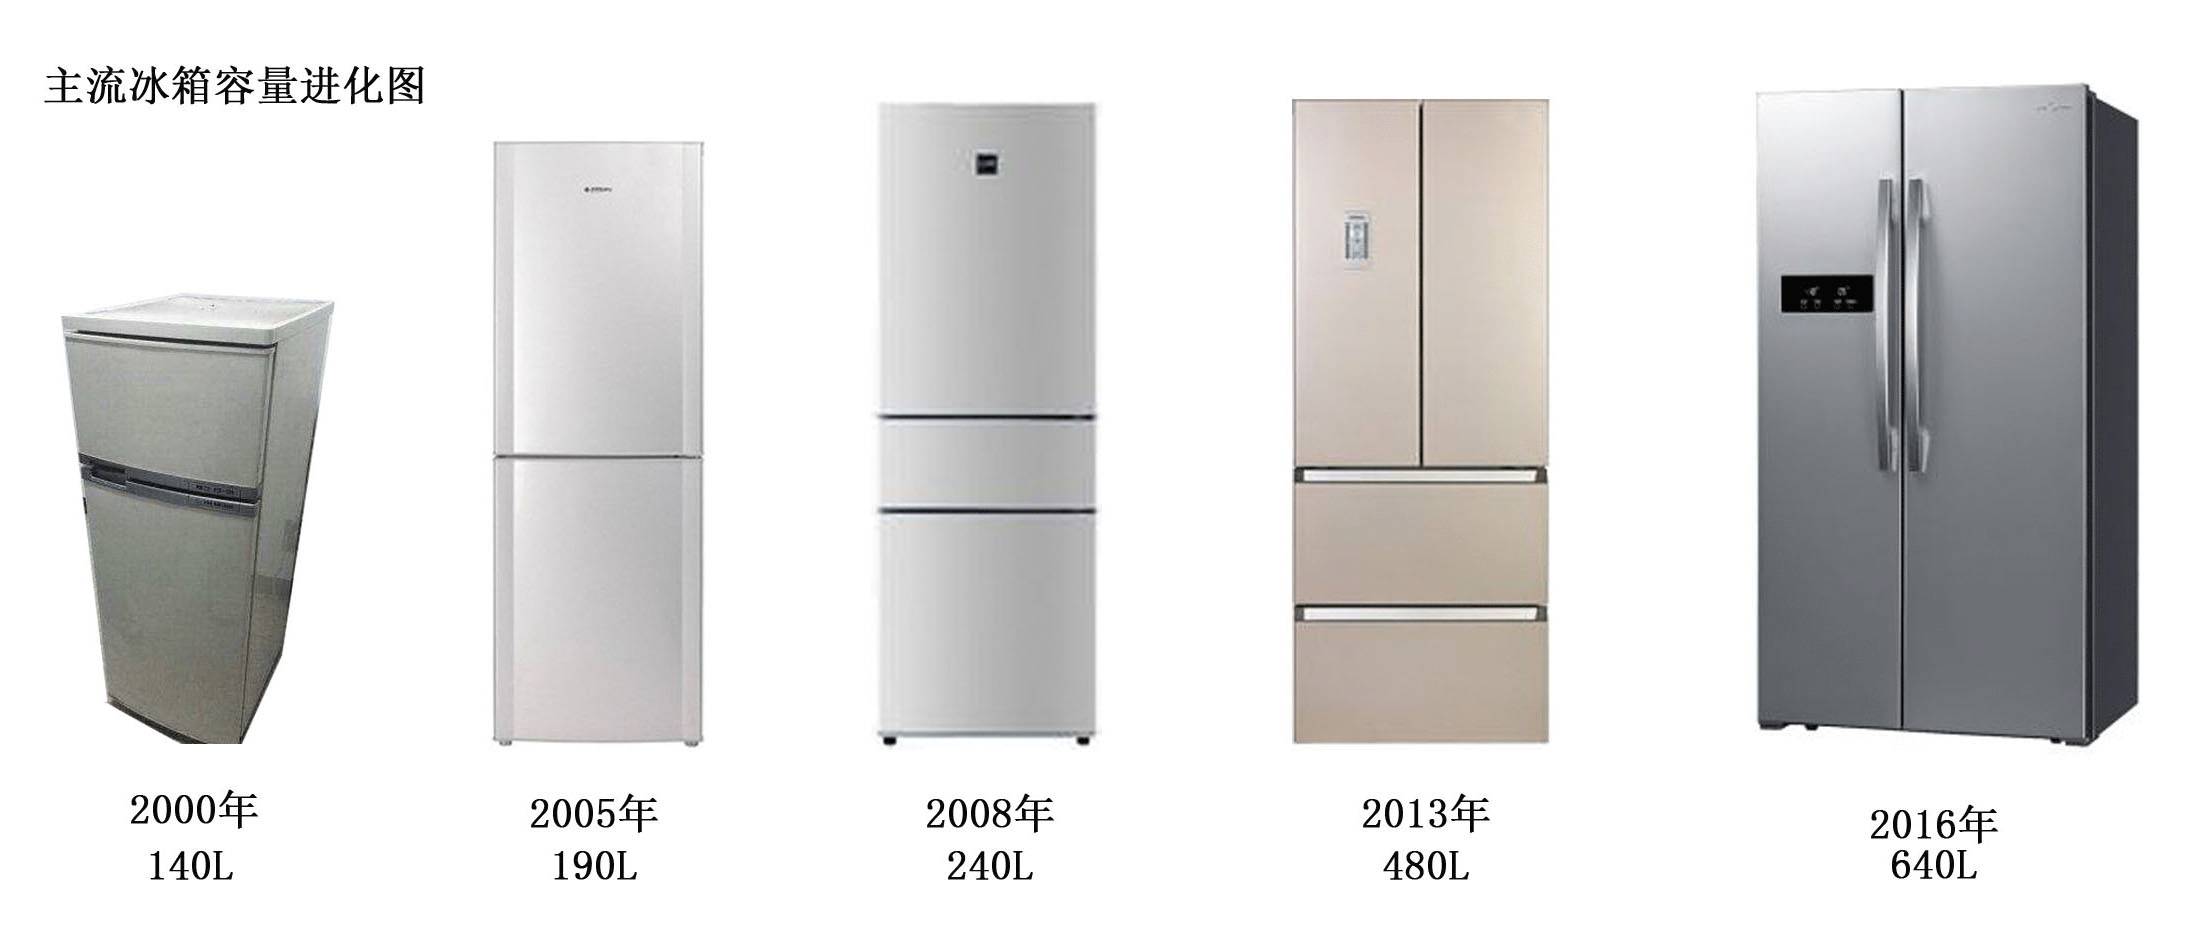 美菱冰箱发展史 回忆30年品质升级之路—万维家电网